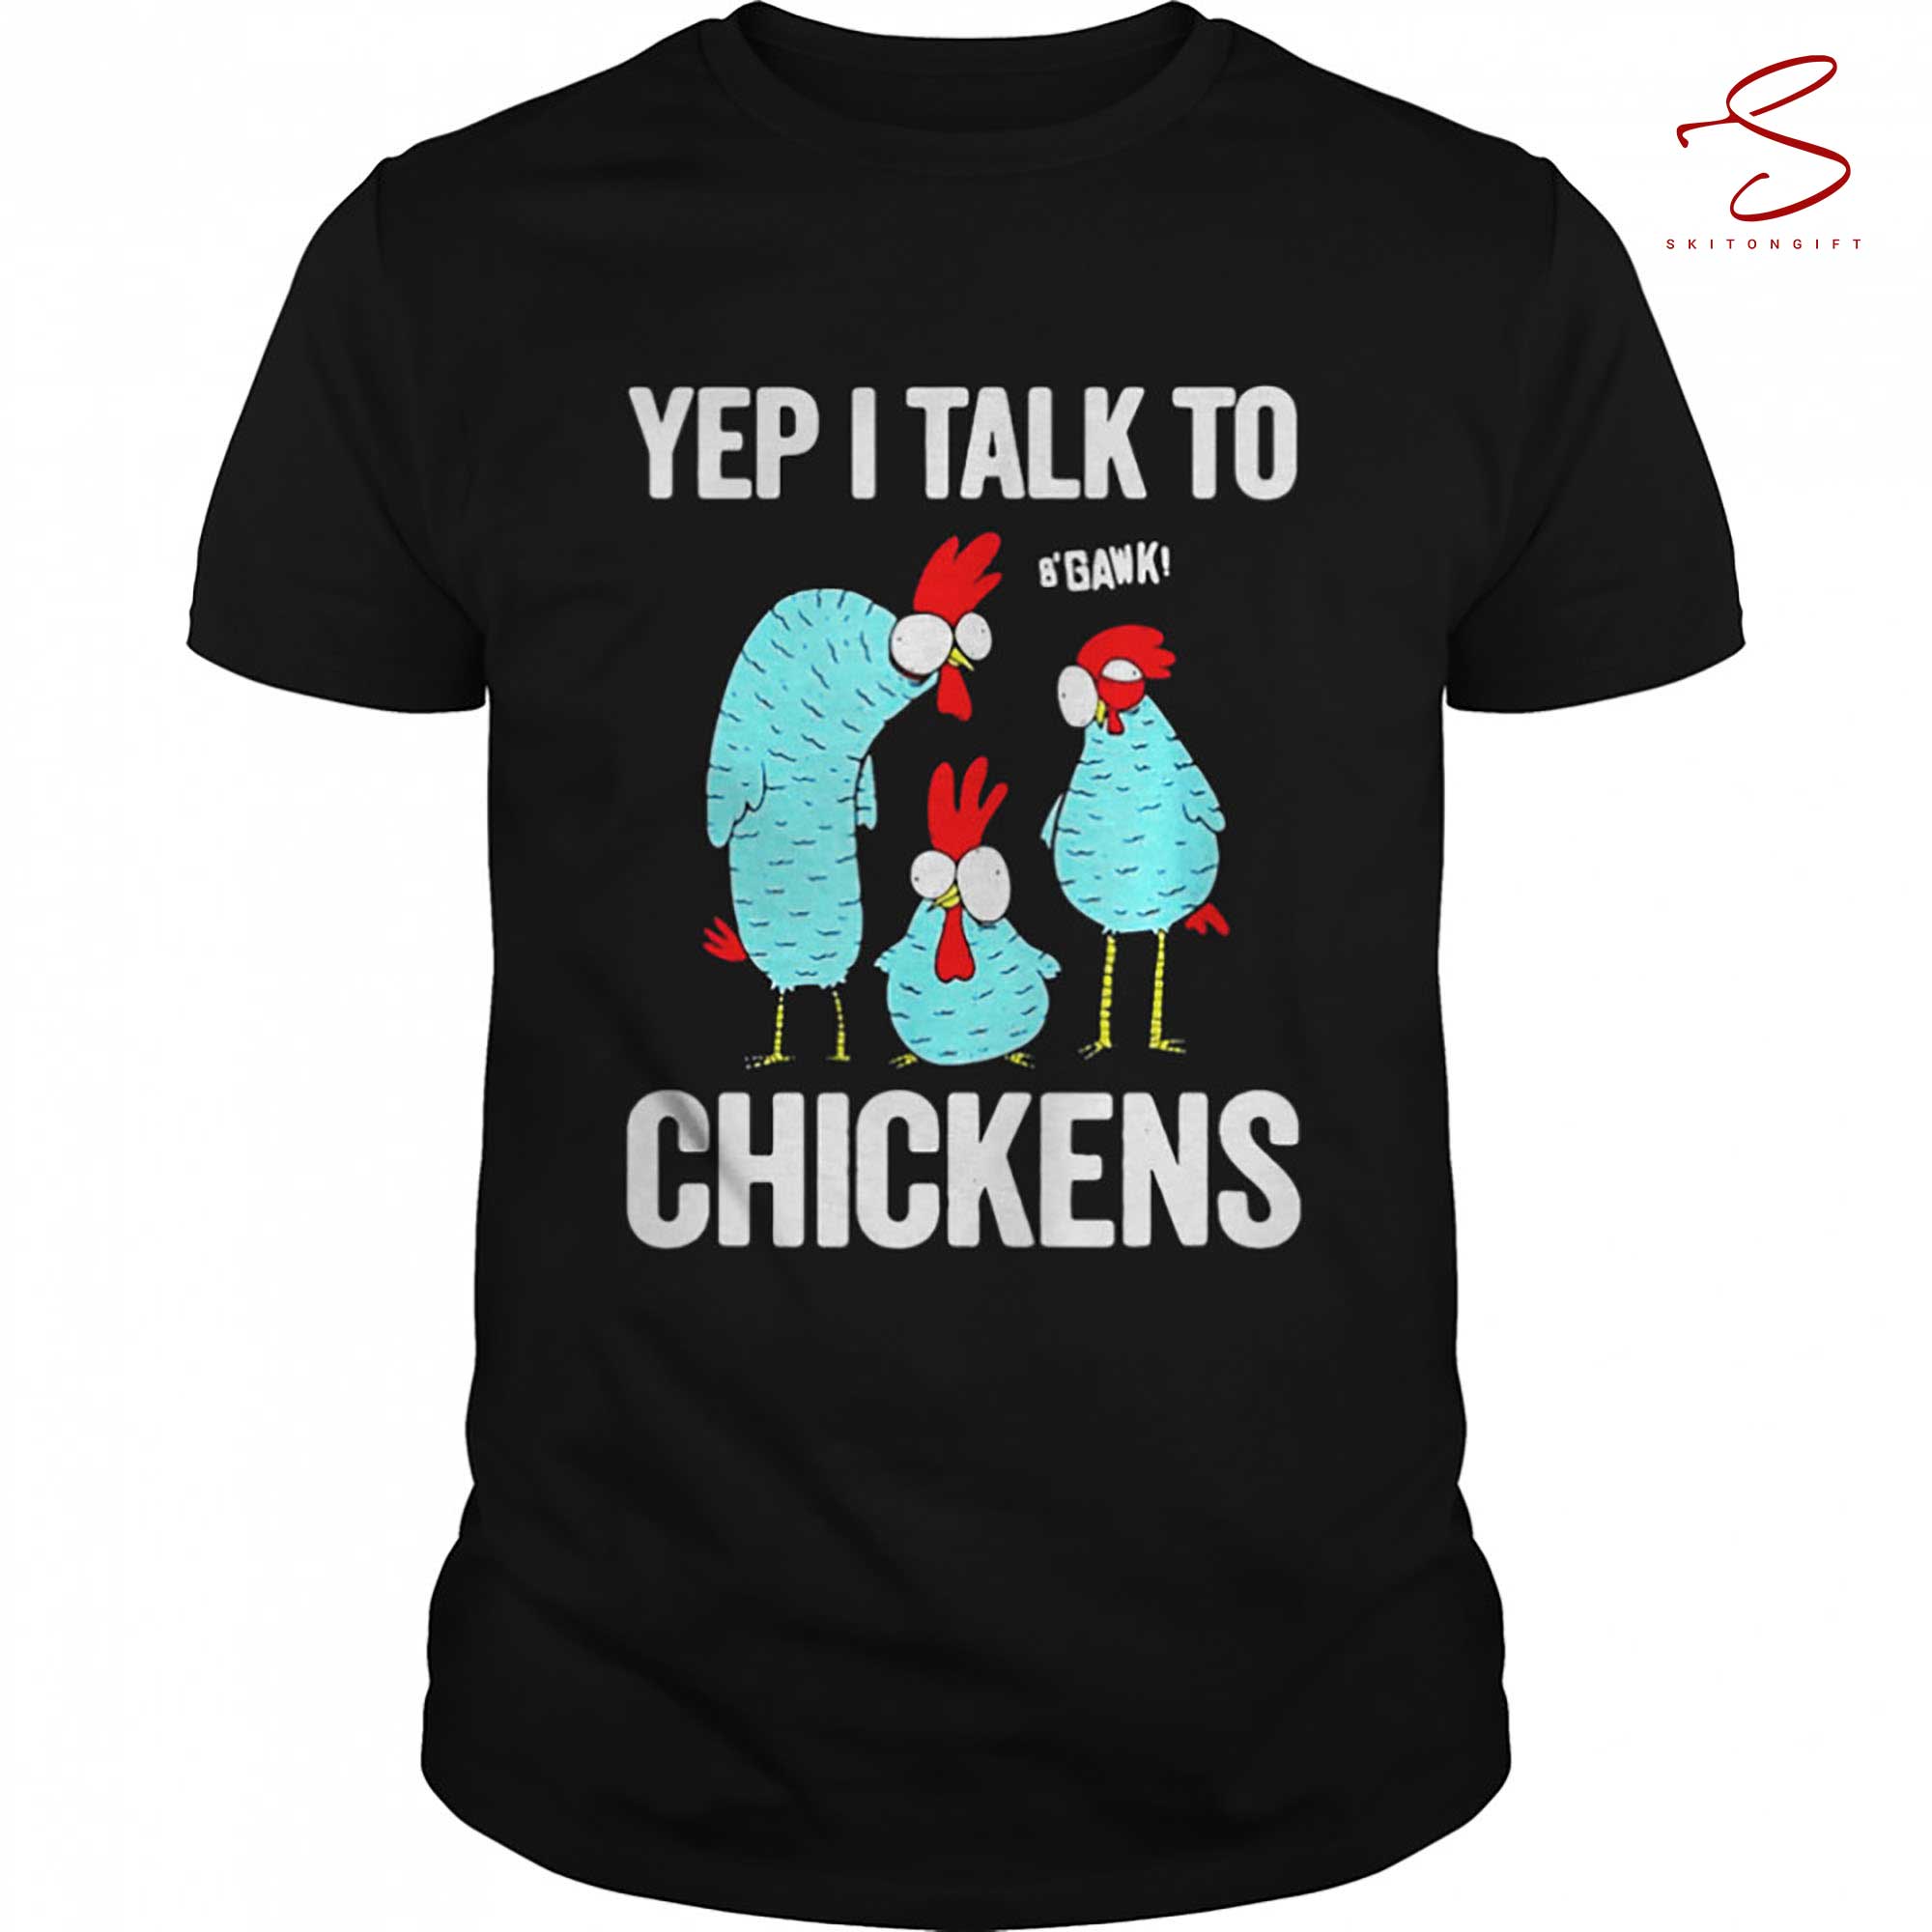 Skitongift Yep I Talk To Chickens Shirt